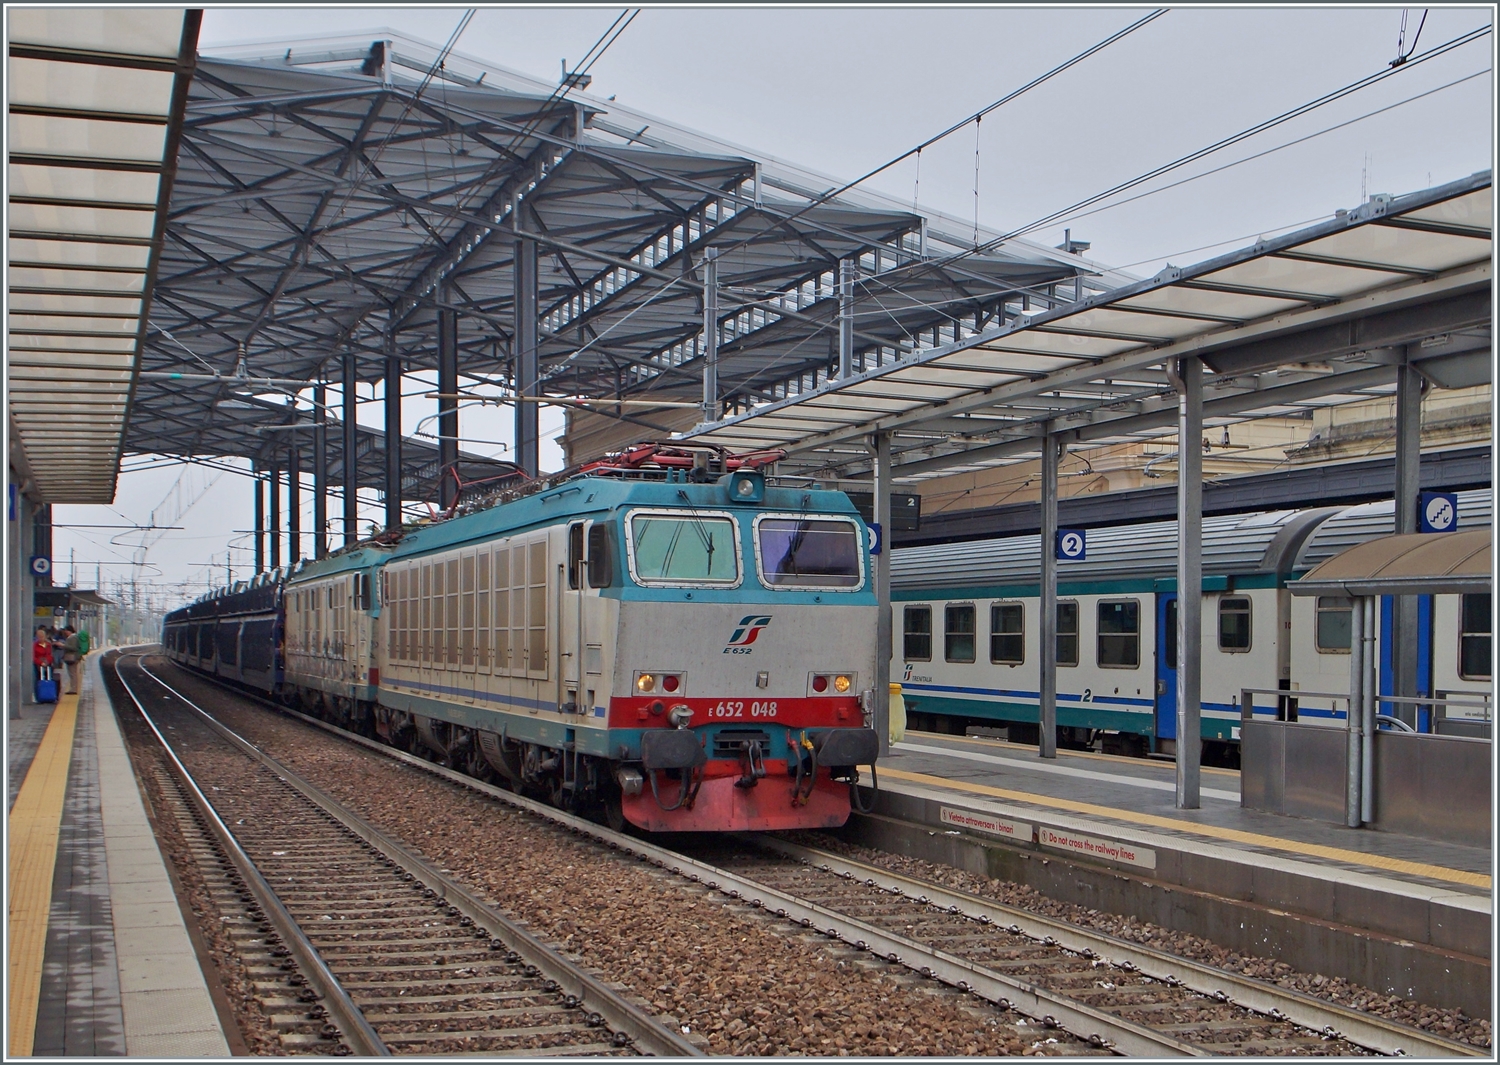 Die FS Trenitalia E 652 048 und eine weitere fahren mit einem Autoverladewagen durch den Bahnhof von Prama in Richtung Süden.

20. Sept. 2014